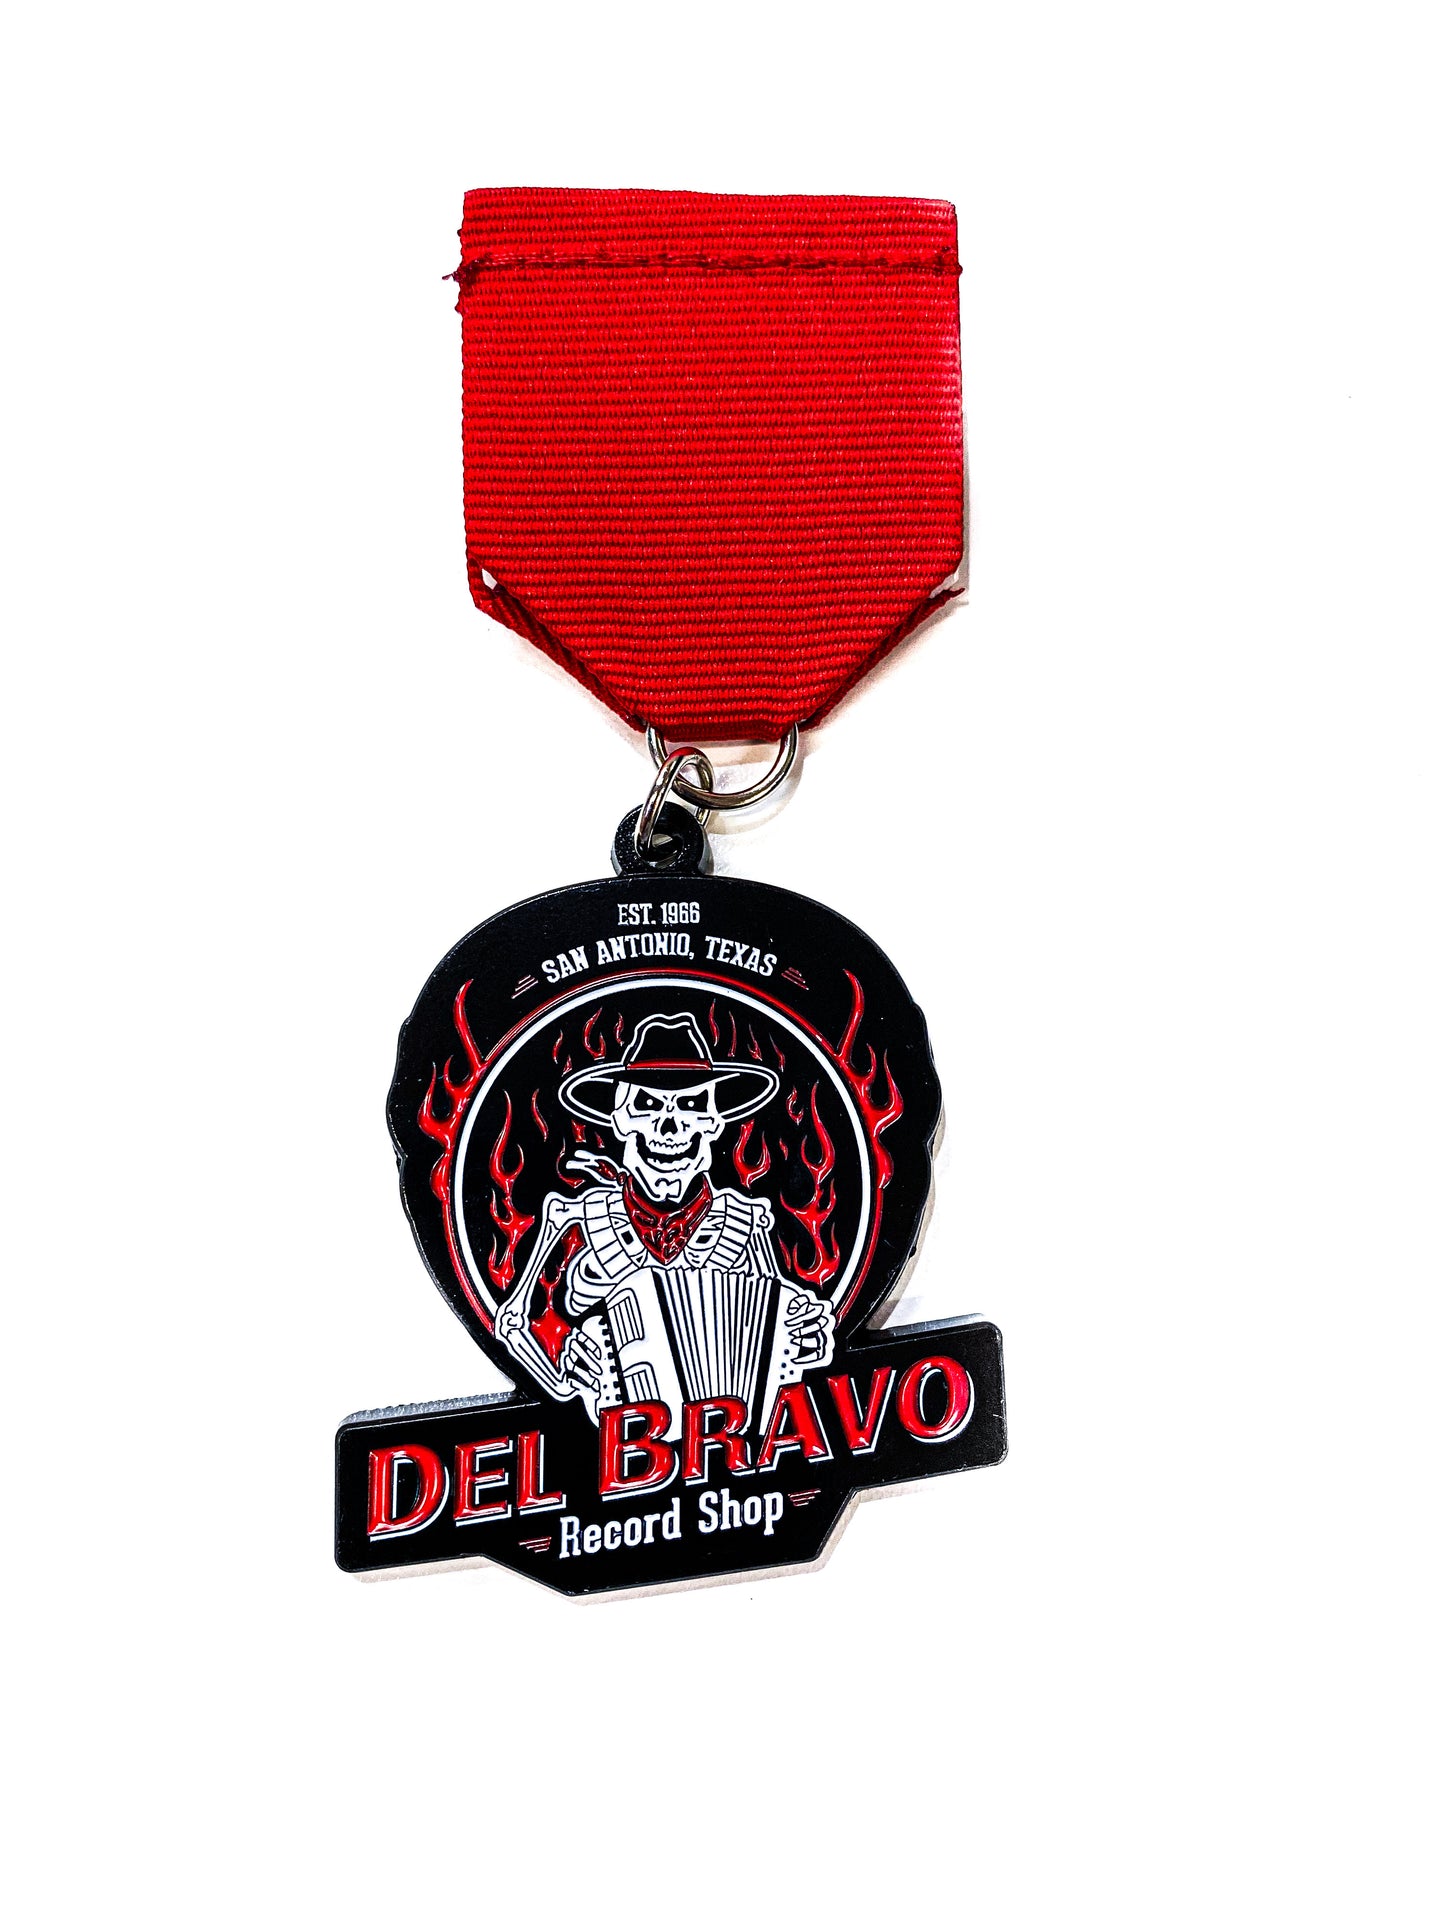 Medalla Fiesta de la Tienda de Discos Del Bravo